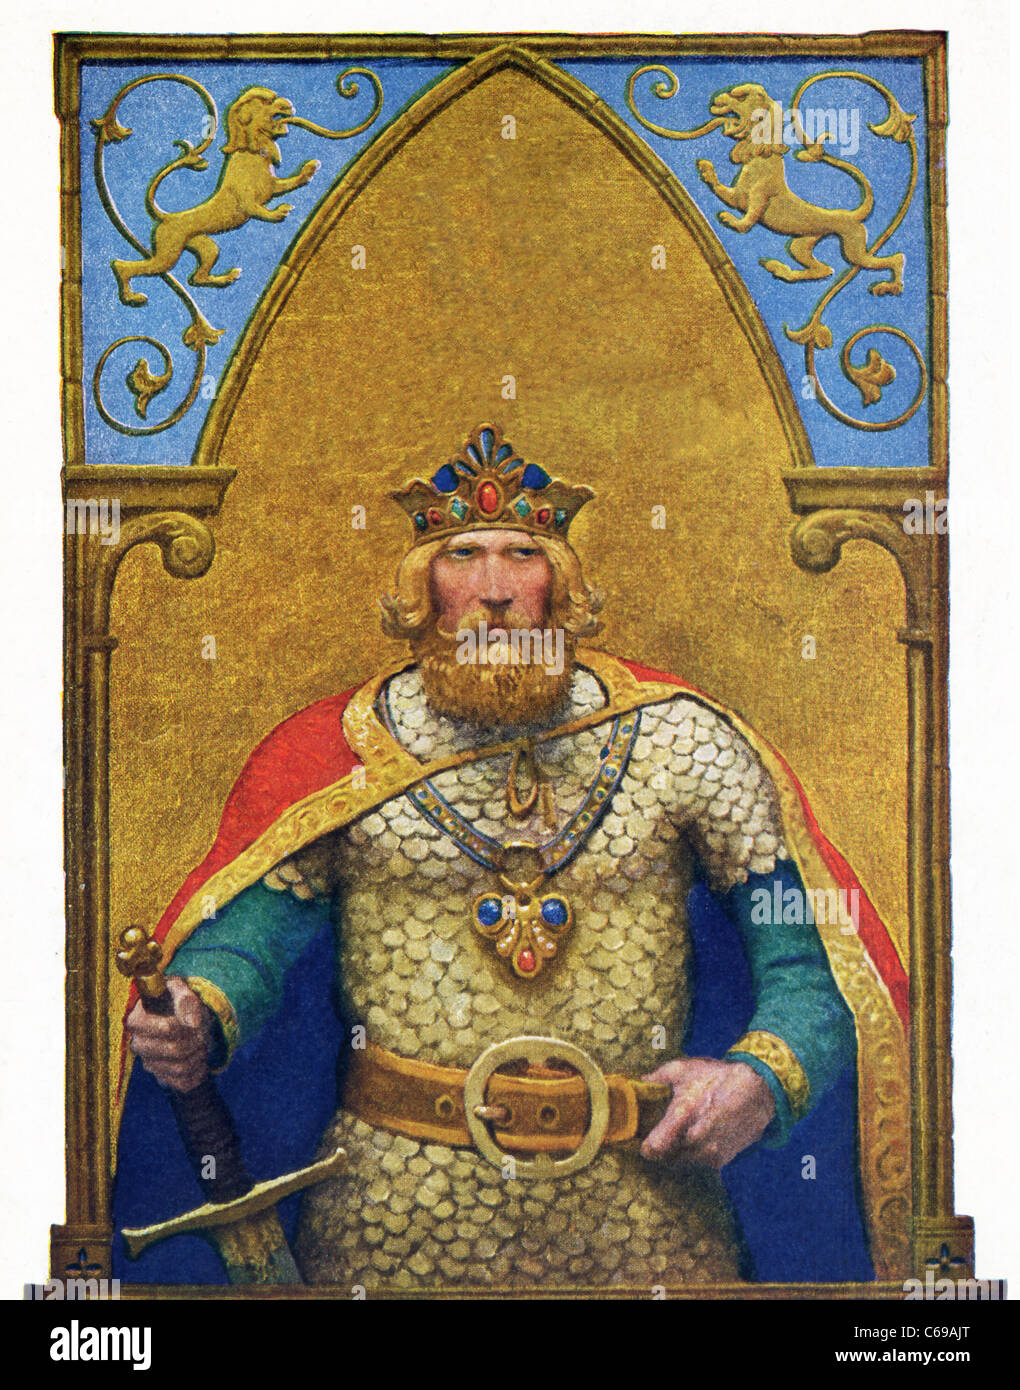 King Arthur war eine legendäre britische Führer, in der 5. und 6. Jahrhundert n. Chr. gelebt haben soll Stockfoto